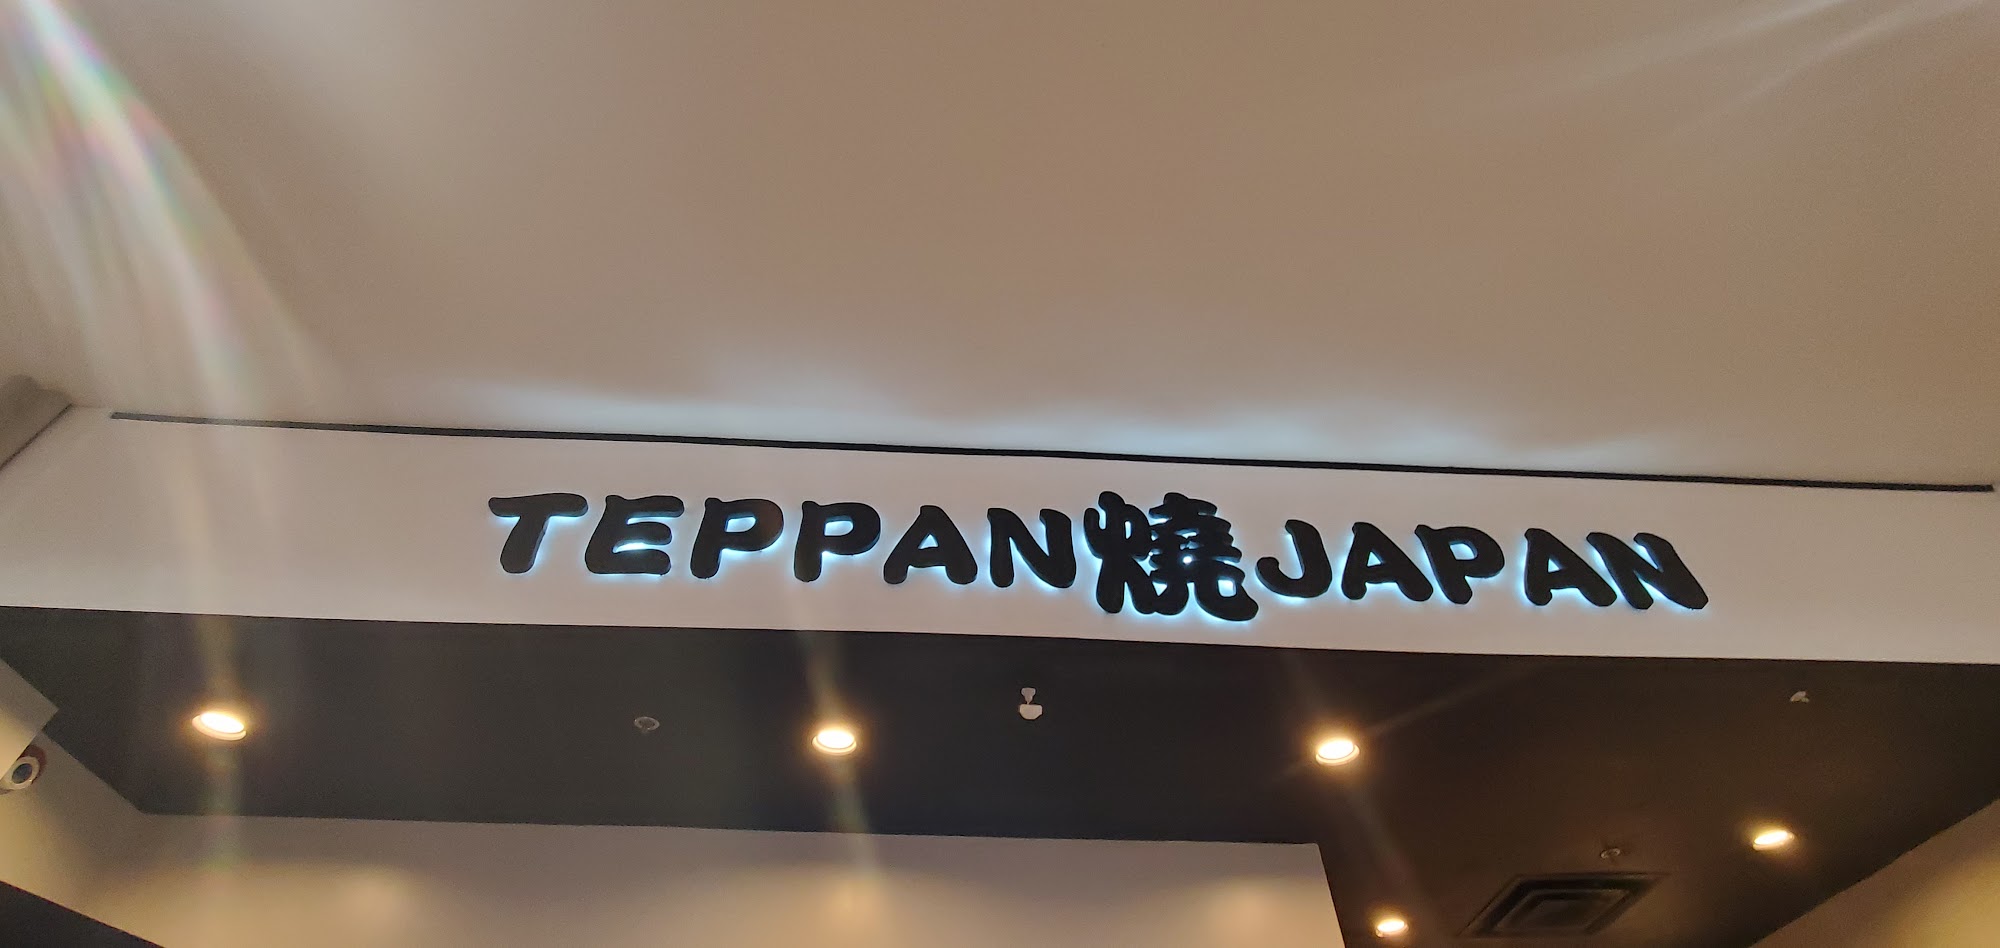 Teppan Japan